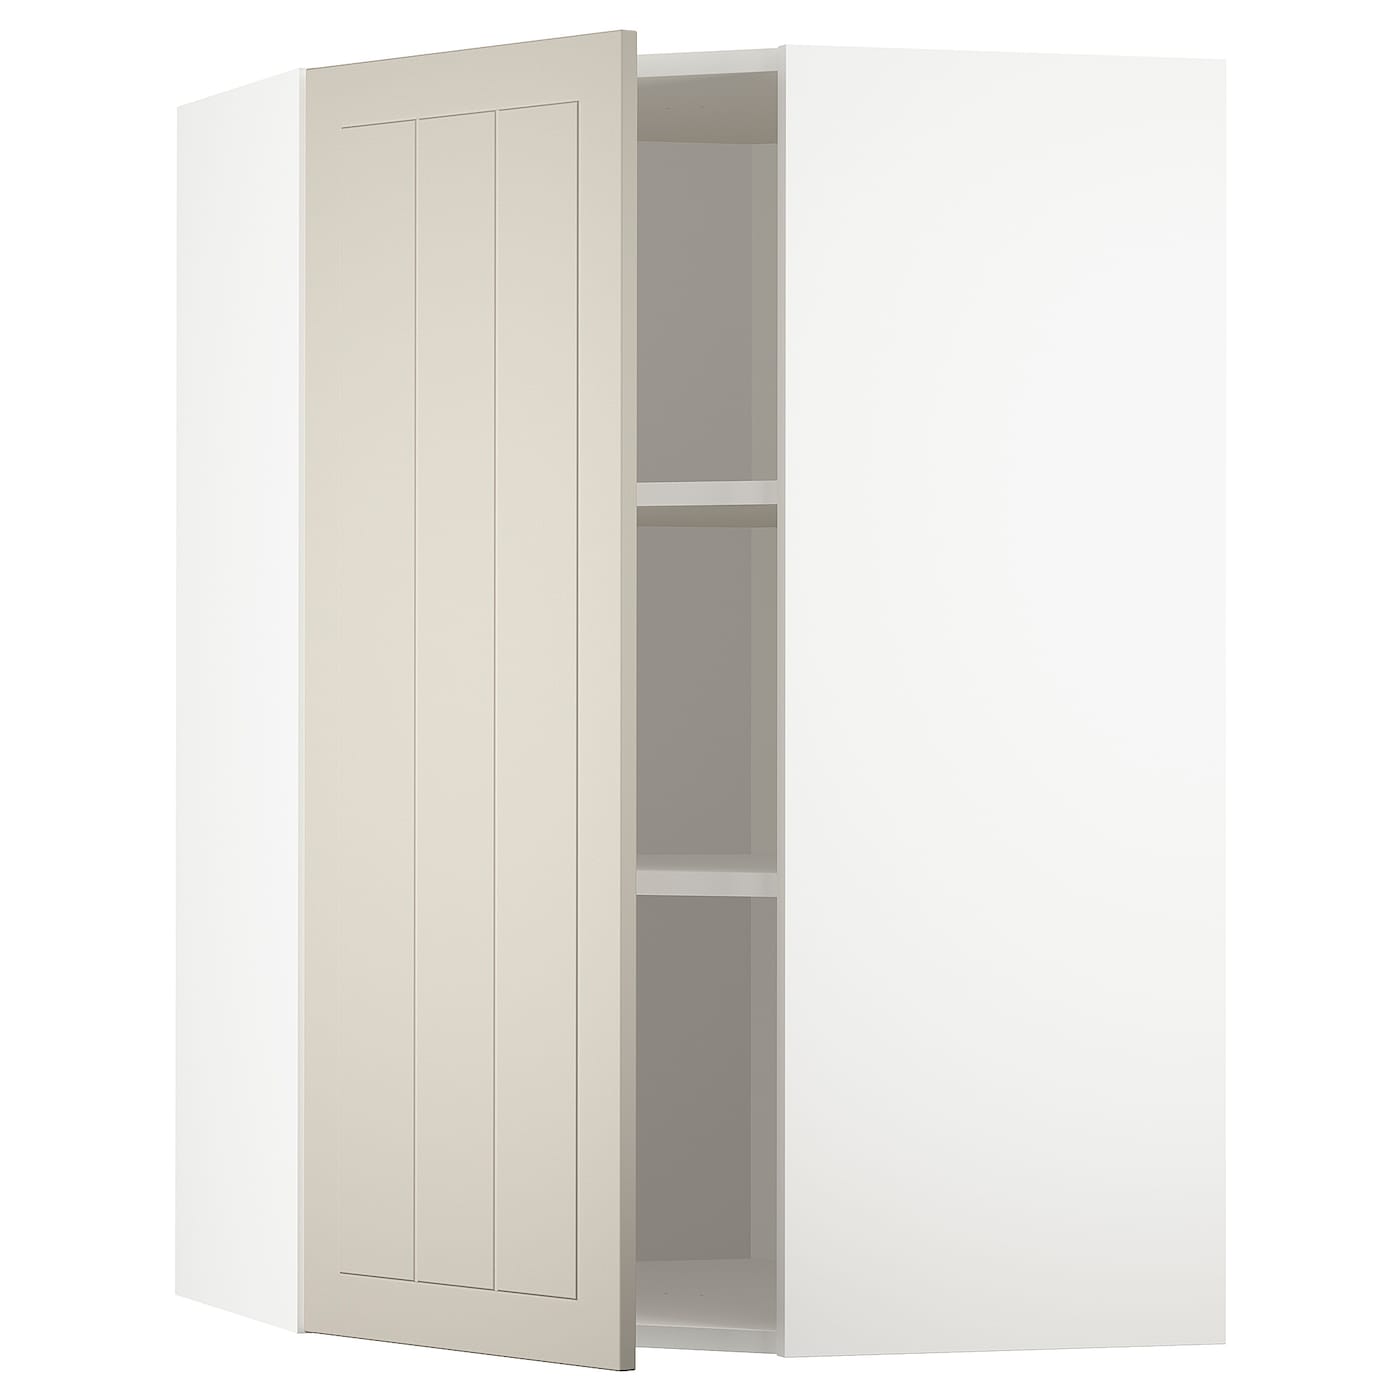 Угловой навесной шкаф с полками - METOD  IKEA/  МЕТОД ИКЕА, 100х68 см, белый/светло-бежевый